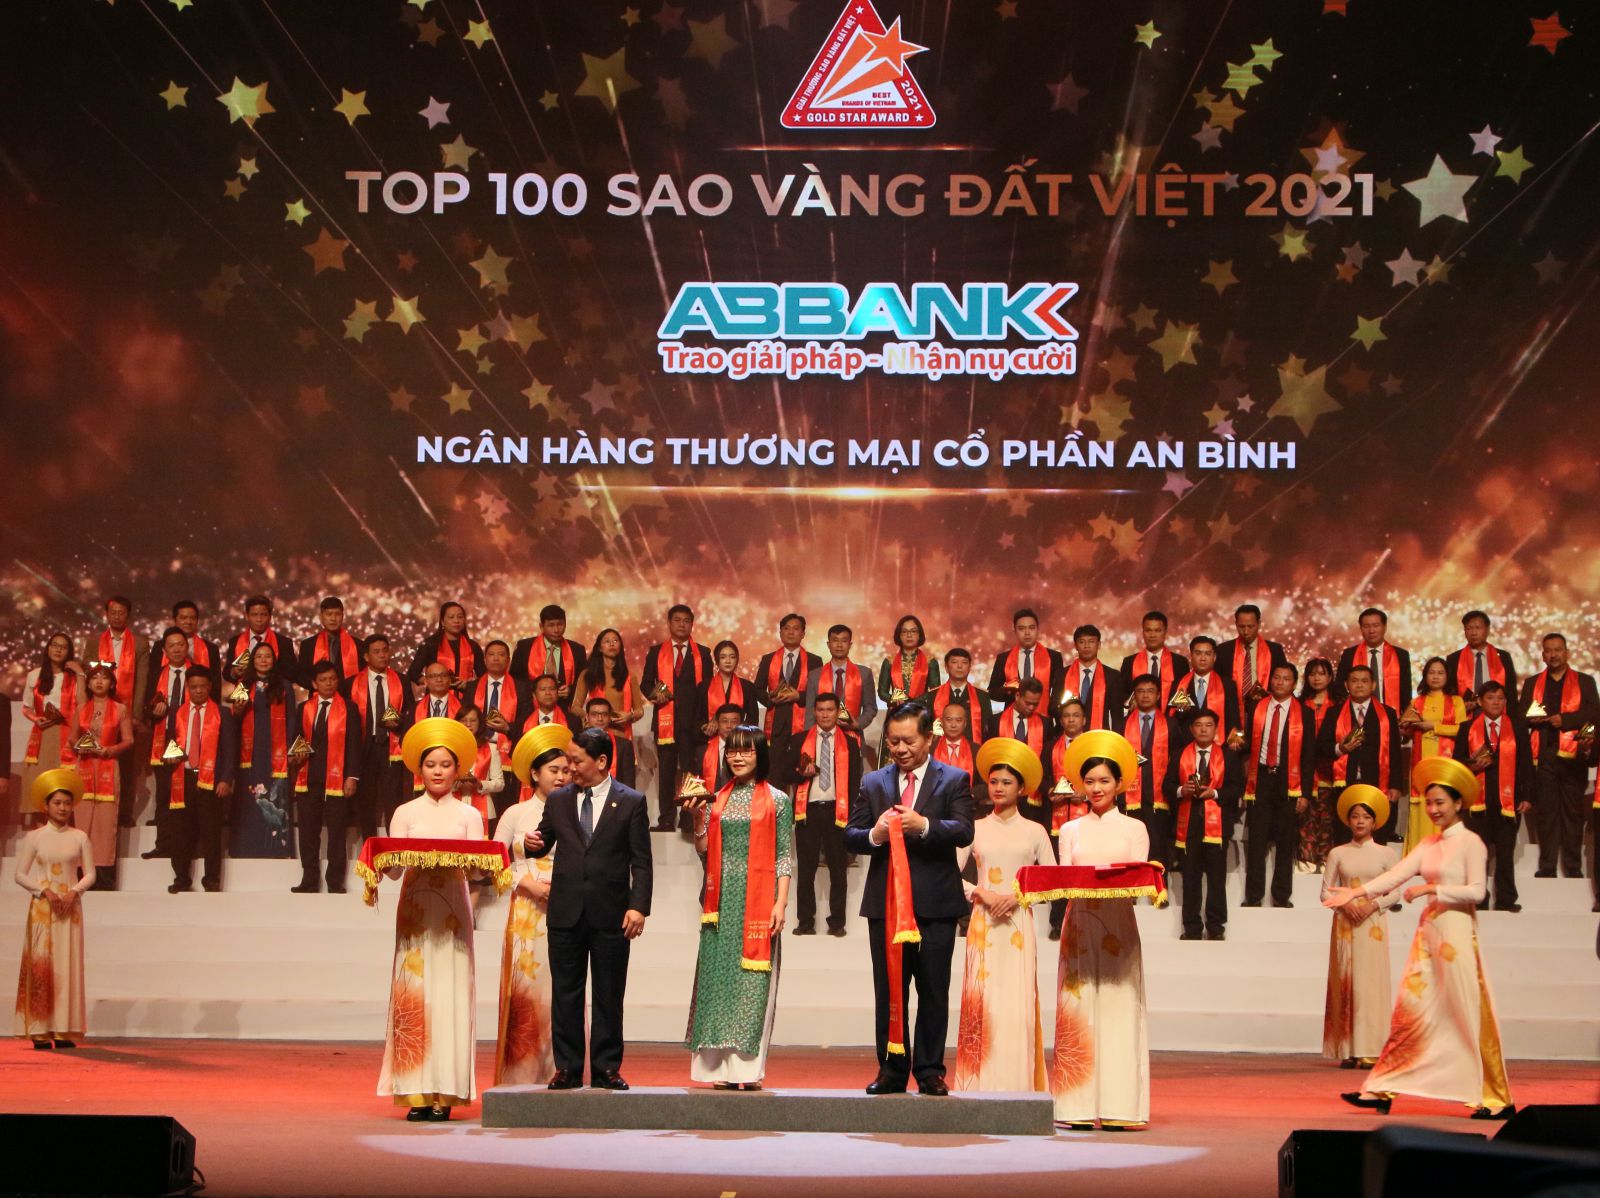 Bà Nguyễn Thị Hương – Phó Tổng Giám đốc, đại diện cho ABBANK nhận Giải thưởng Sao Vàng đất Việt 2021